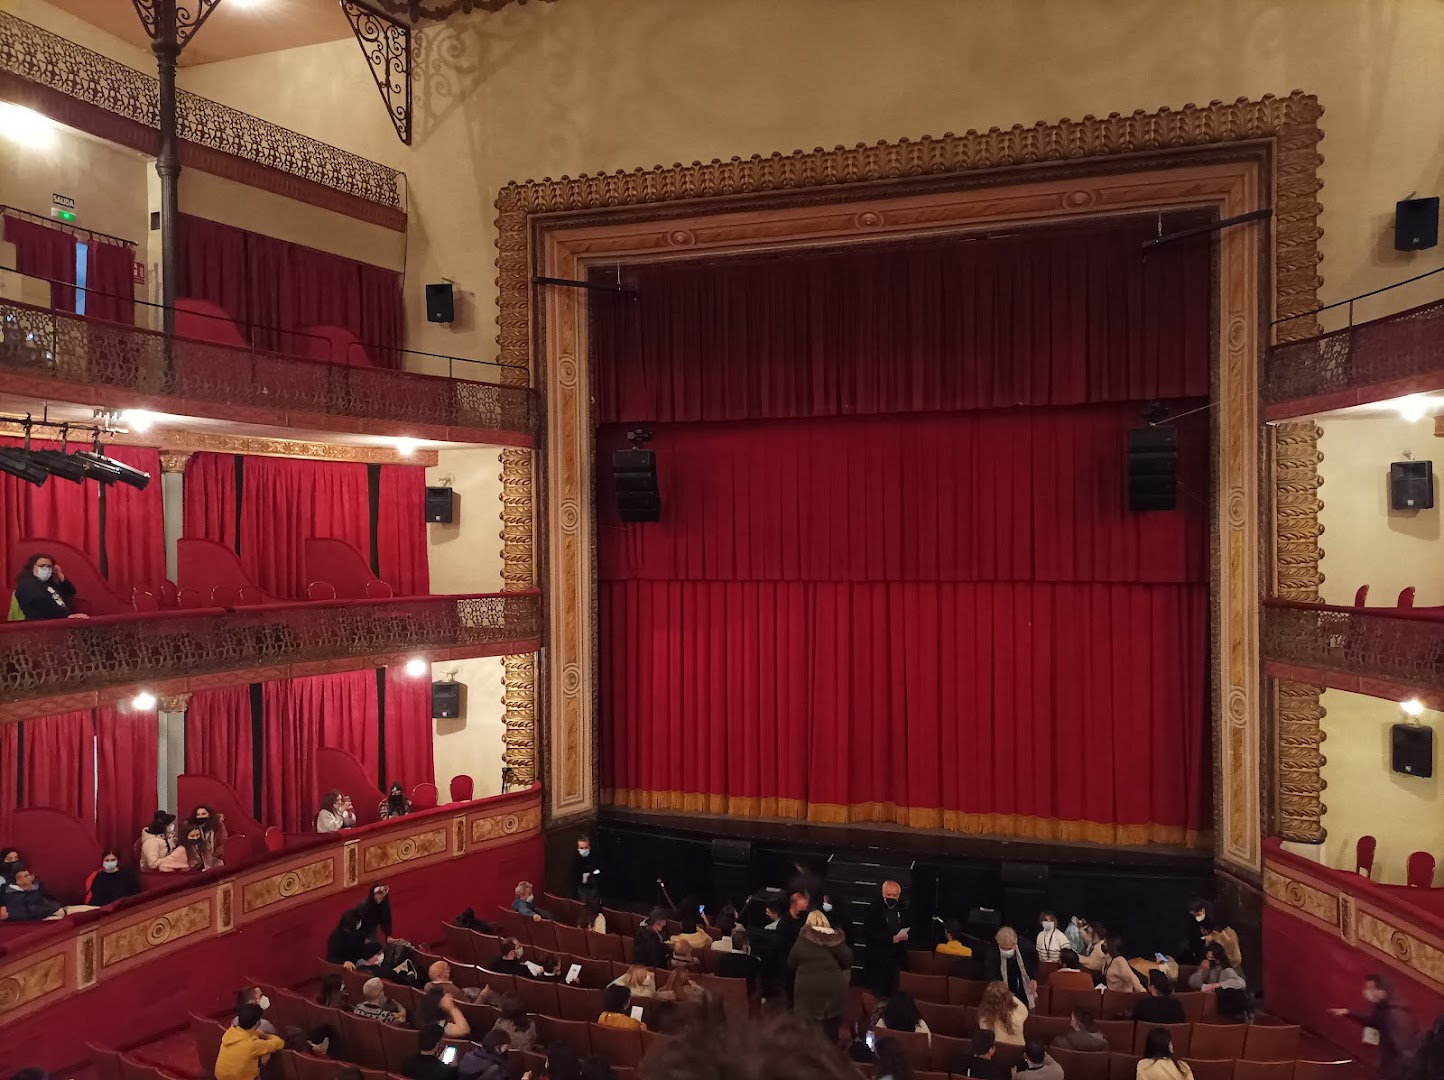 Gran Teatro de Cáceres